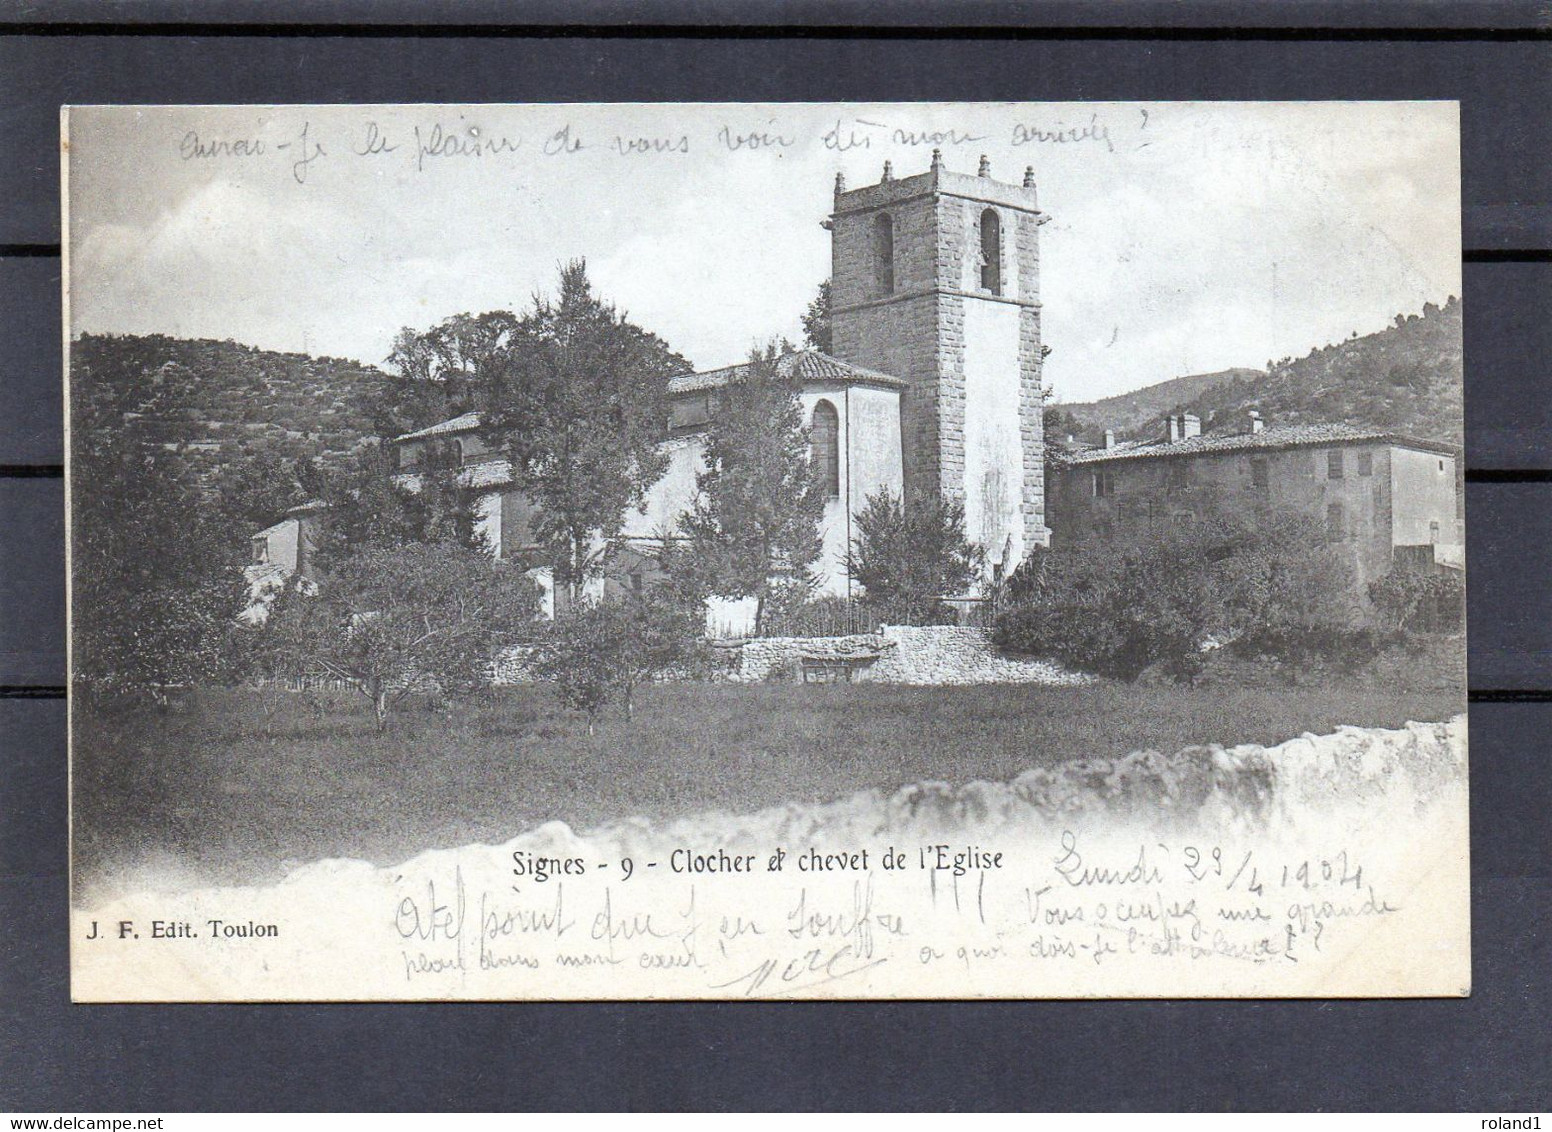 Signes - Clocher Et Chevet De L'église.( édit. J.F - Toulon ). - Signes